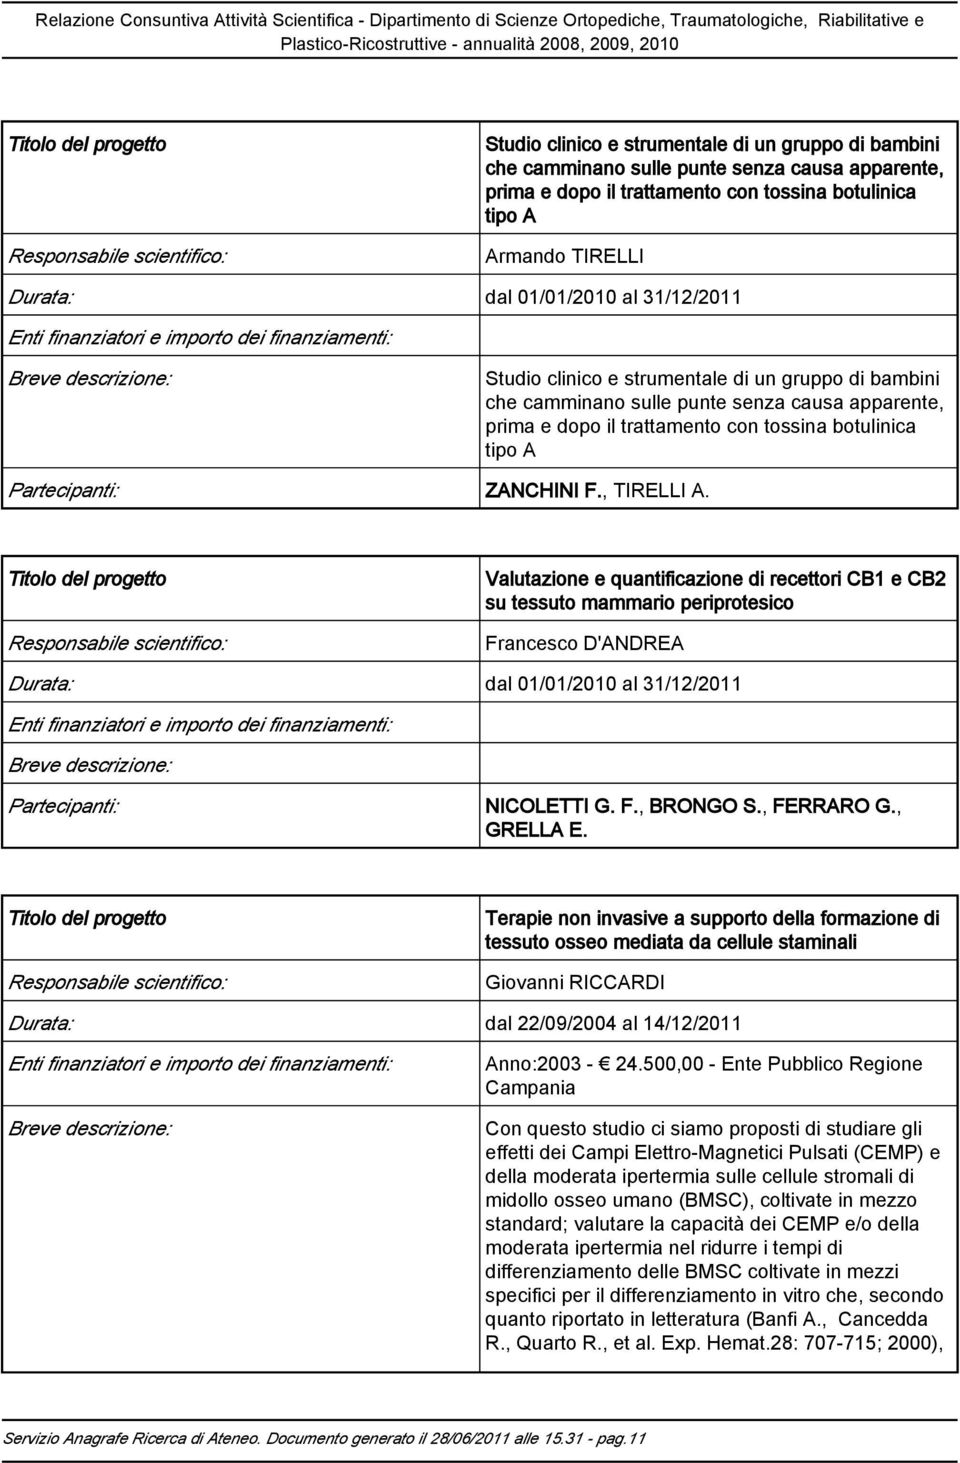 Valutazione e quantificazione di recettori CB1 e CB2 su tessuto mammario periprotesico Francesco D'ANDREA Durata: dal 01/01/2010 al 31/12/2011 NICOLETTI G. F., BRONGO S., FERRARO G., GRELLA E.